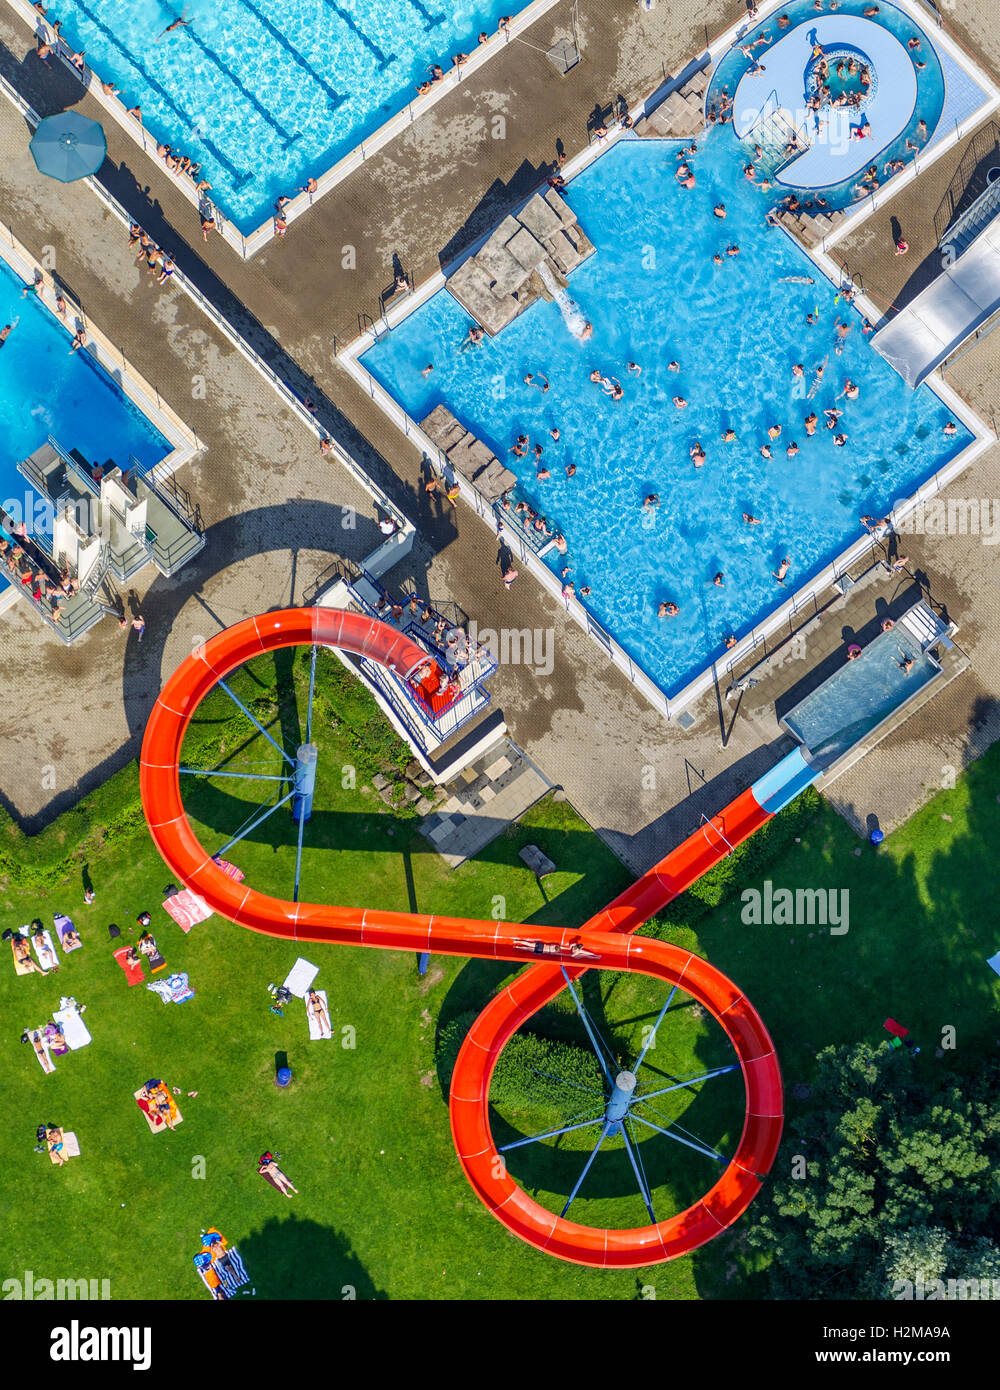 Vue aérienne, rouge glisse, toboggan, piscine, Herdecke, Ruhr, Nordrhein-Westfalen, Allemagne, Europe, vue aérienne de Herdecke, Banque D'Images